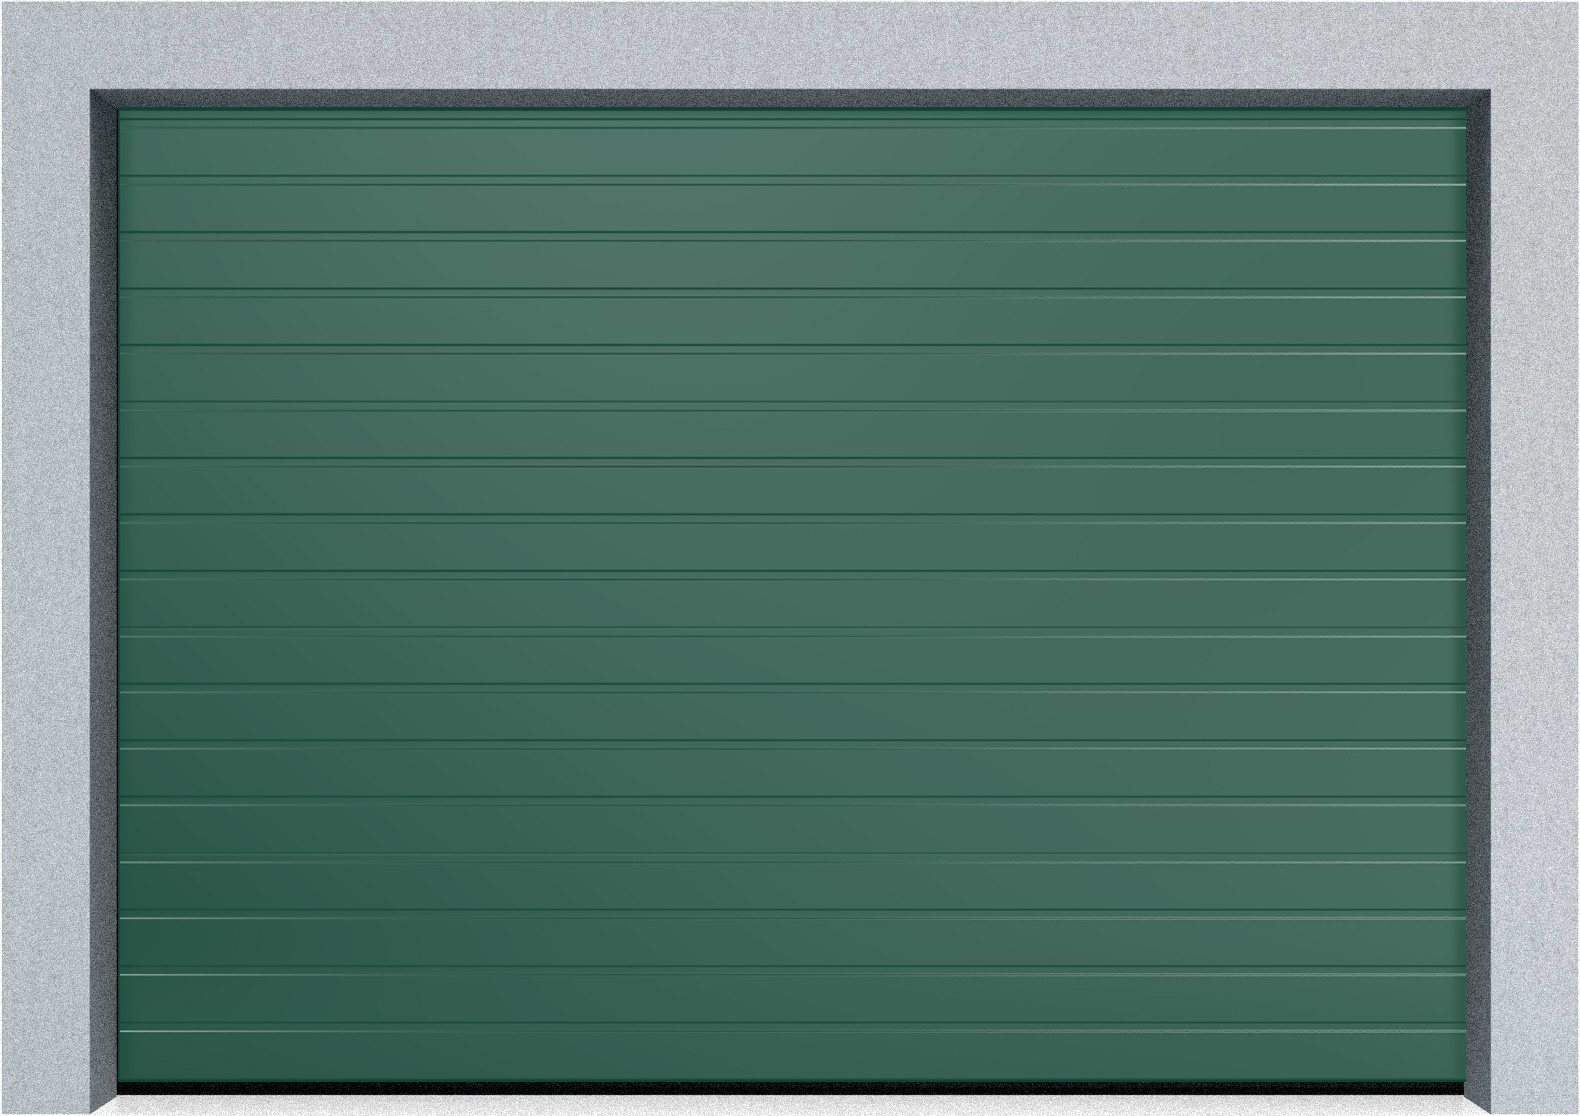  Автоматические Секционные гаражные ворота Hormann LTE 42 4750х2000 S-гофр, Микроволна стандартные цвета, фото 3 